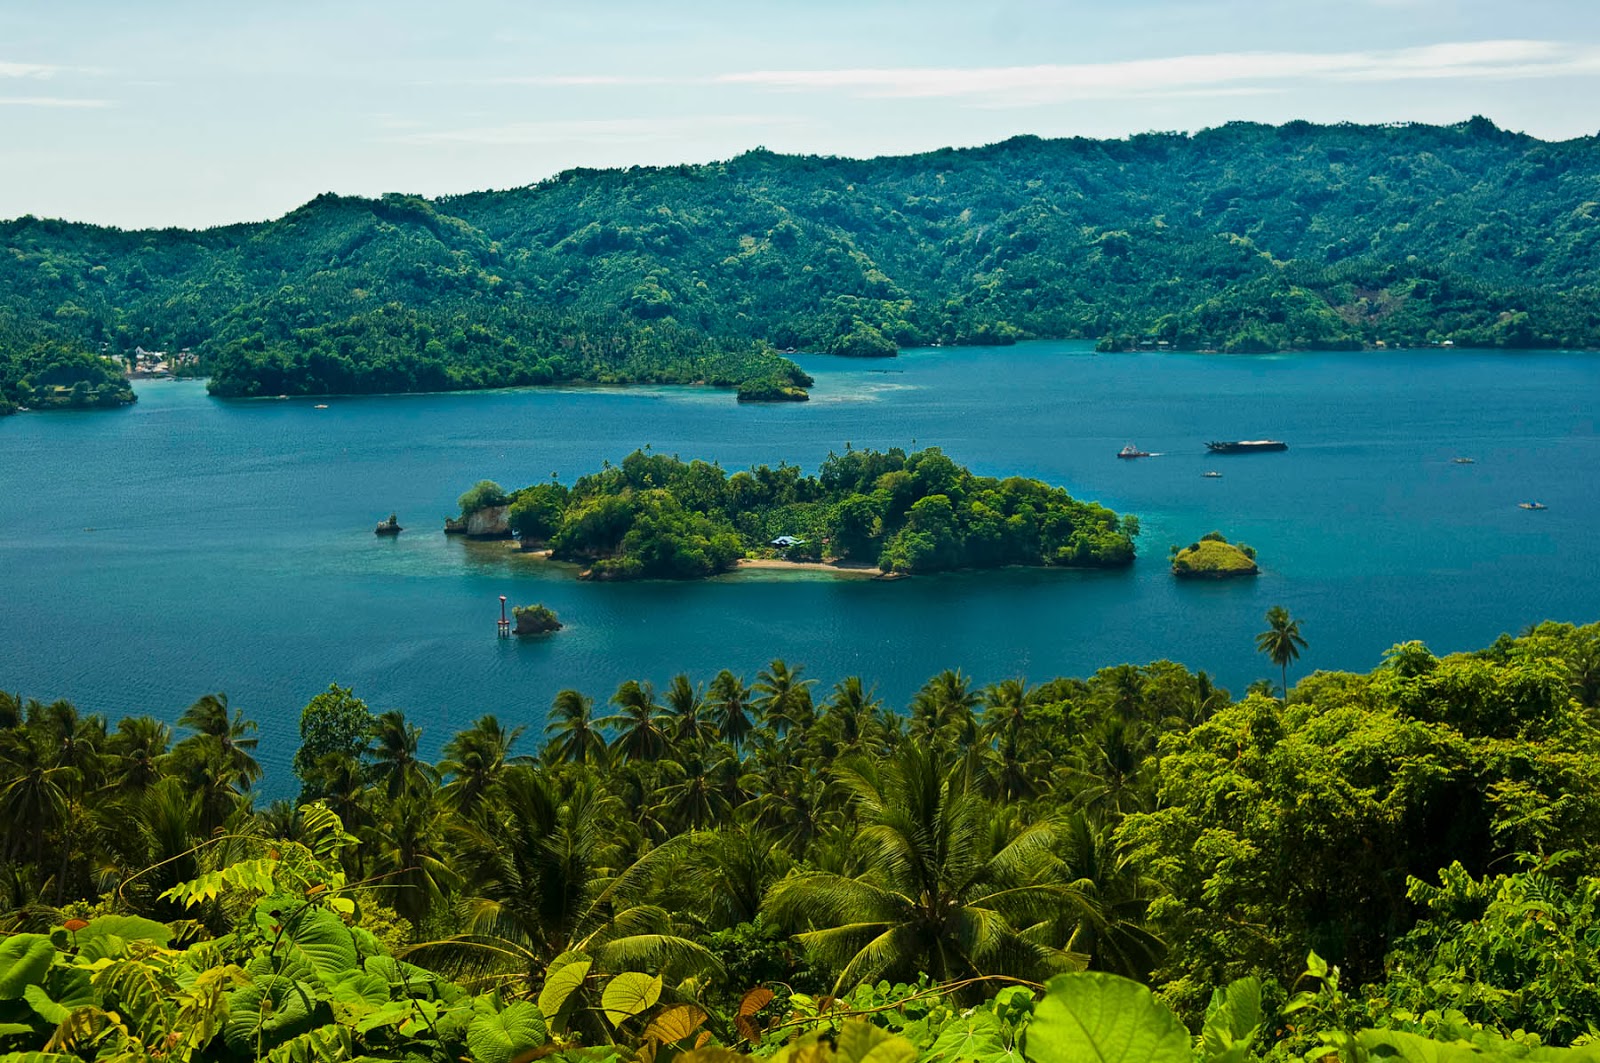 Jelajah ke Sulawesi Utara, Ini Destinasi yang Tersimpan Didalamnya!